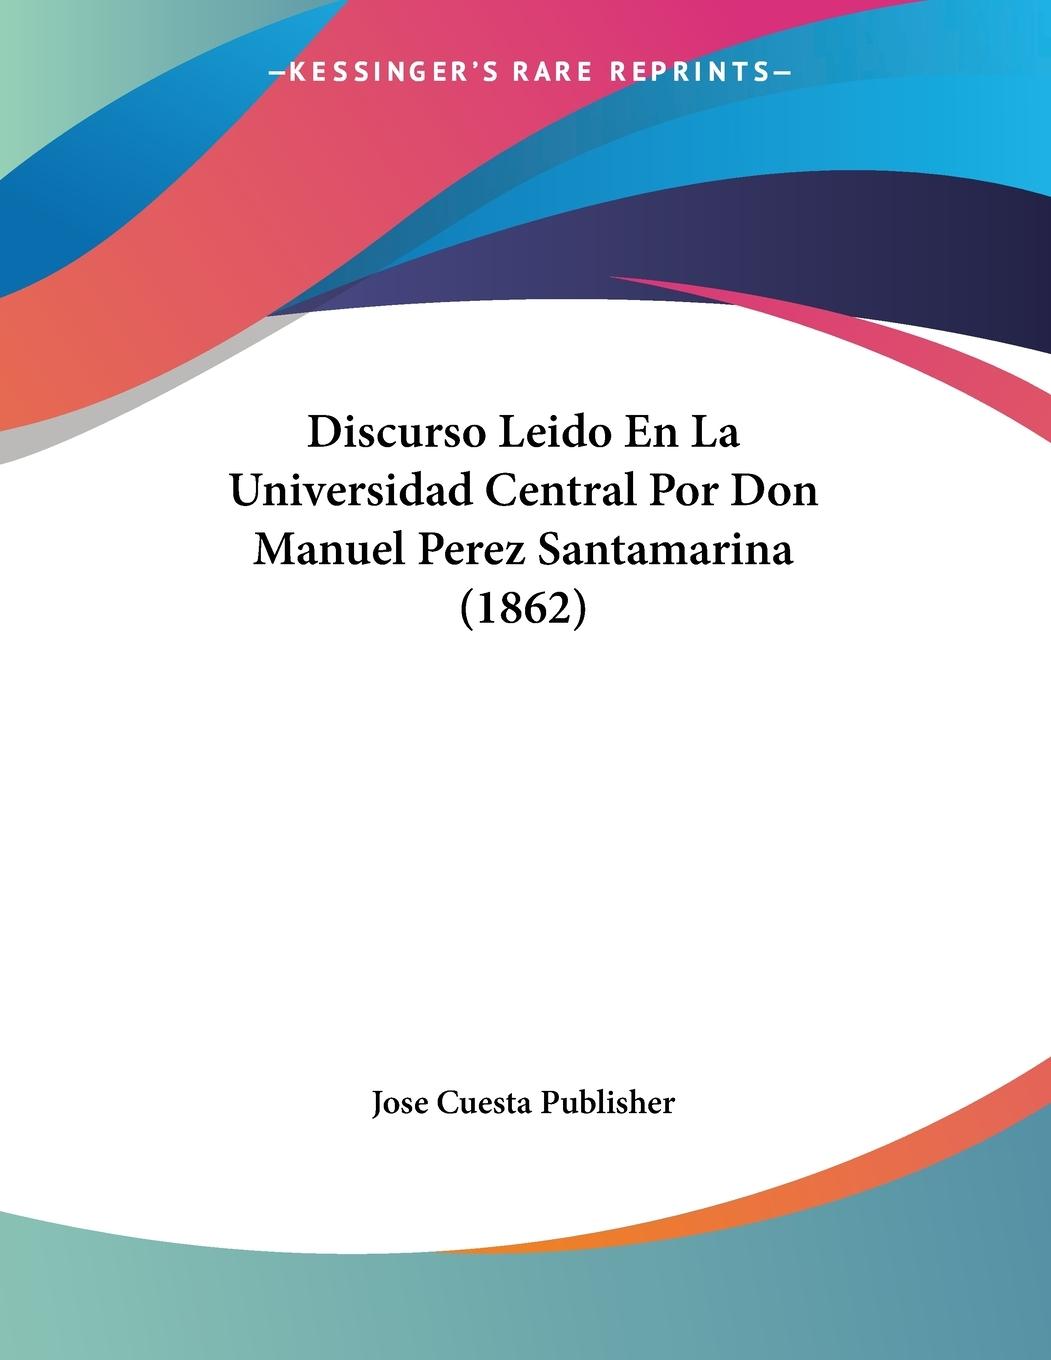 Discurso Leido En La Universidad Central Por Don Manuel Perez Santamarina (1862) - Jose Cuesta Publisher